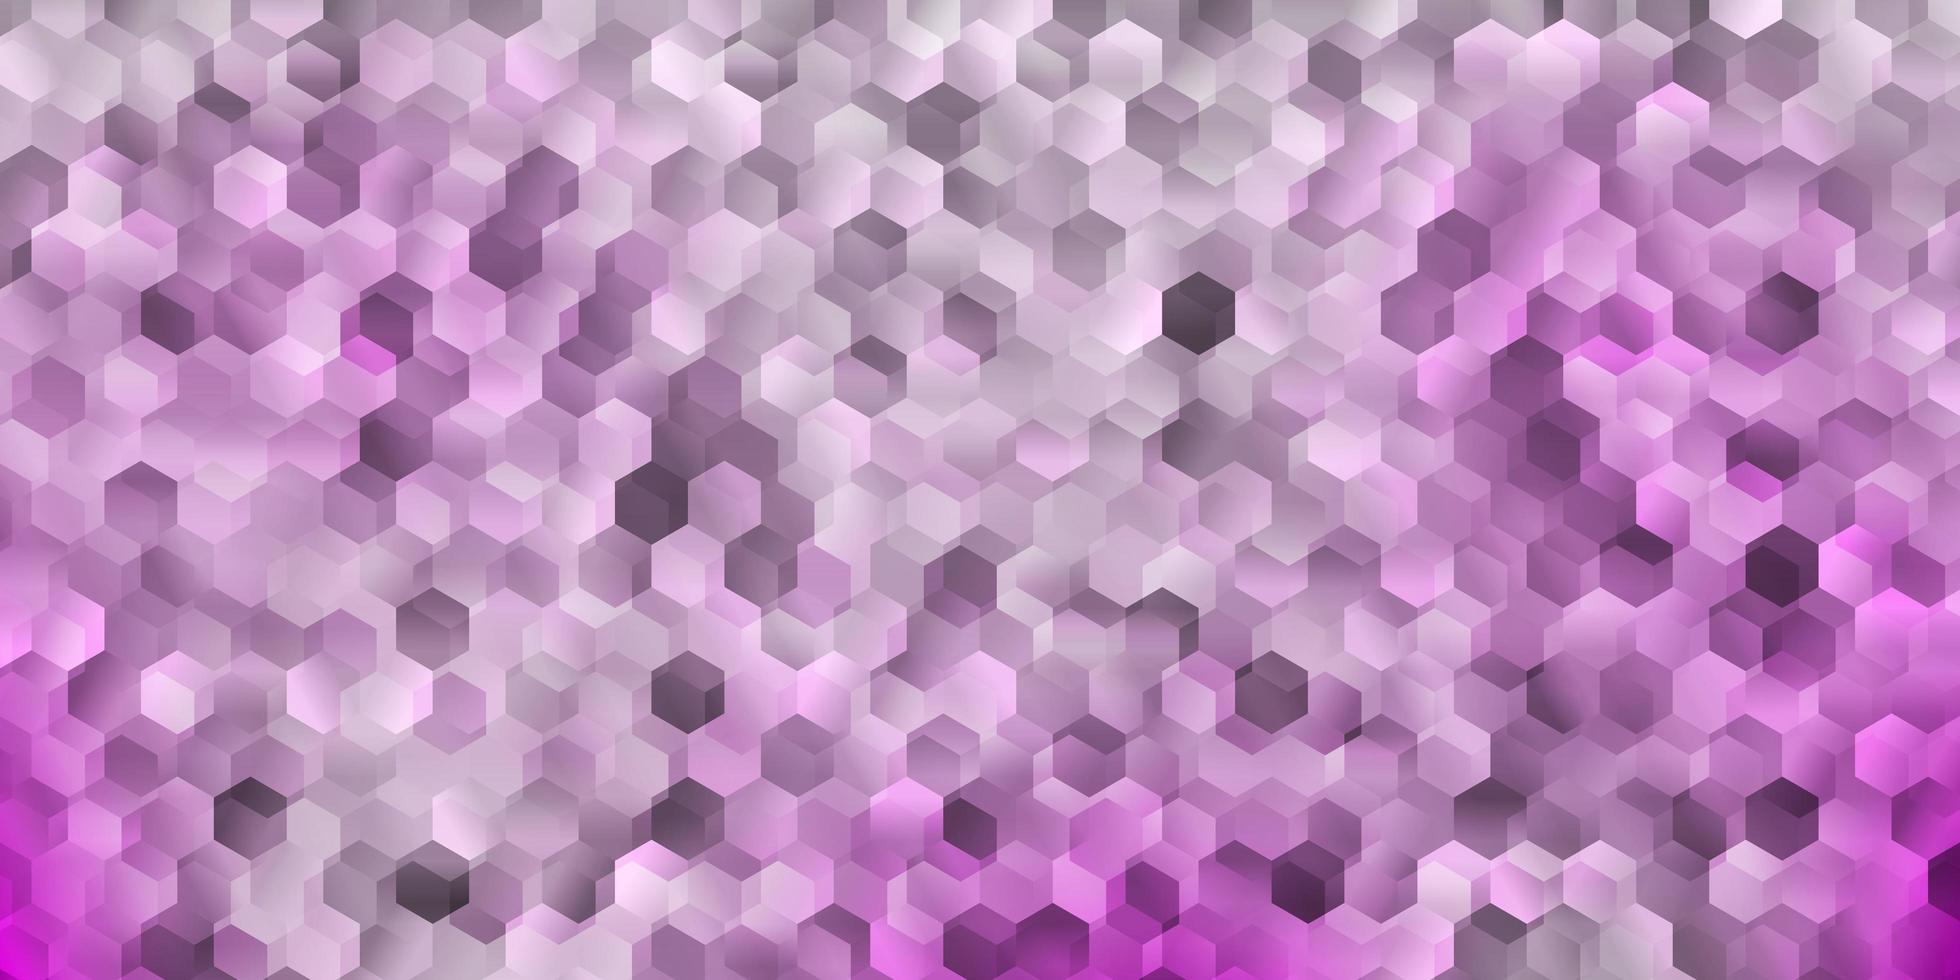 couverture de vecteur violet clair avec des hexagones simples.